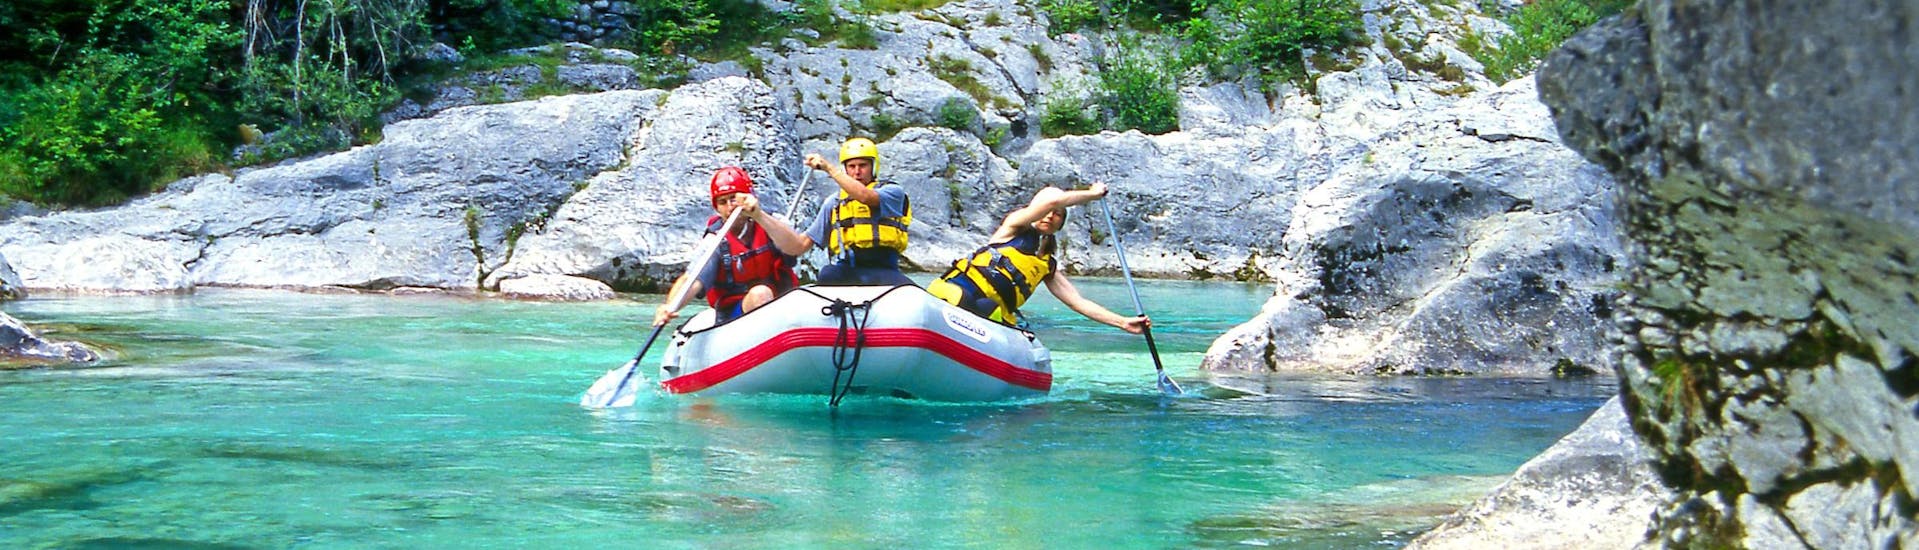 Un grupo de amigos divirtiéndose en un descenso de rafting en aguas bravas en Soča, una zona muy popular para hacer rafing. 